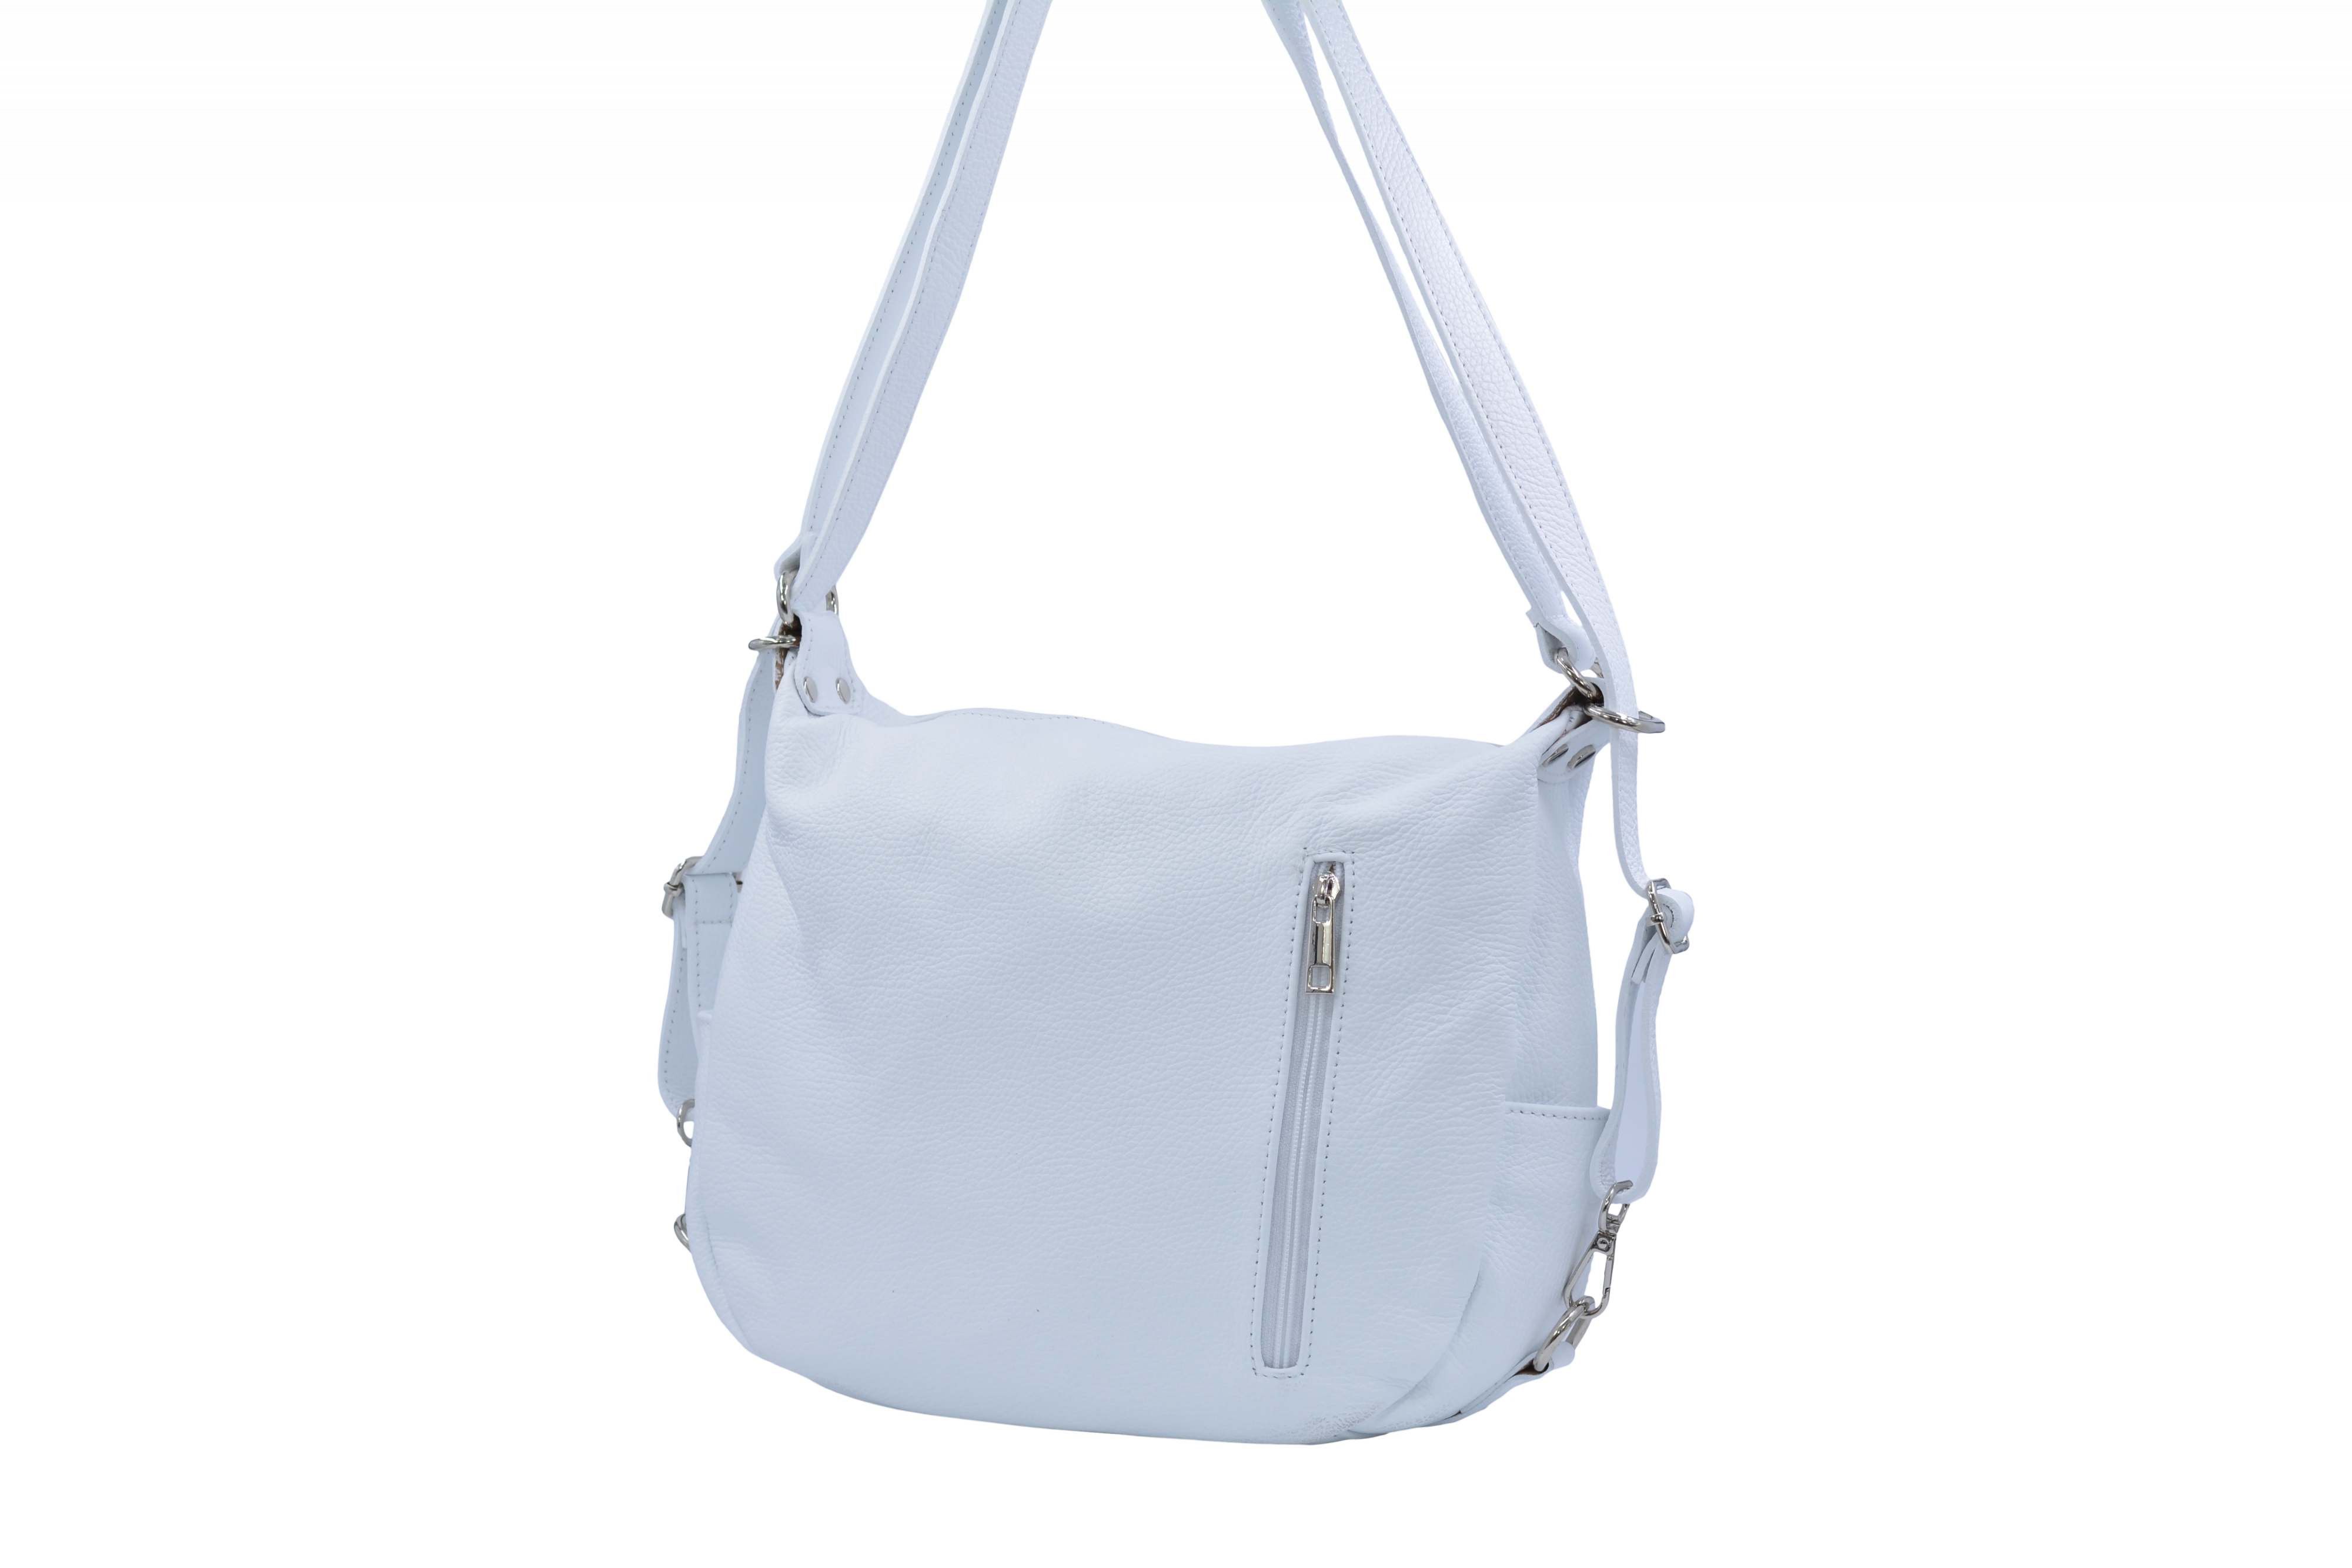 Dámský kožený kabelko-batoh Bílý, 32 x 12 x 28 (XT00-WG4064-15DOL)